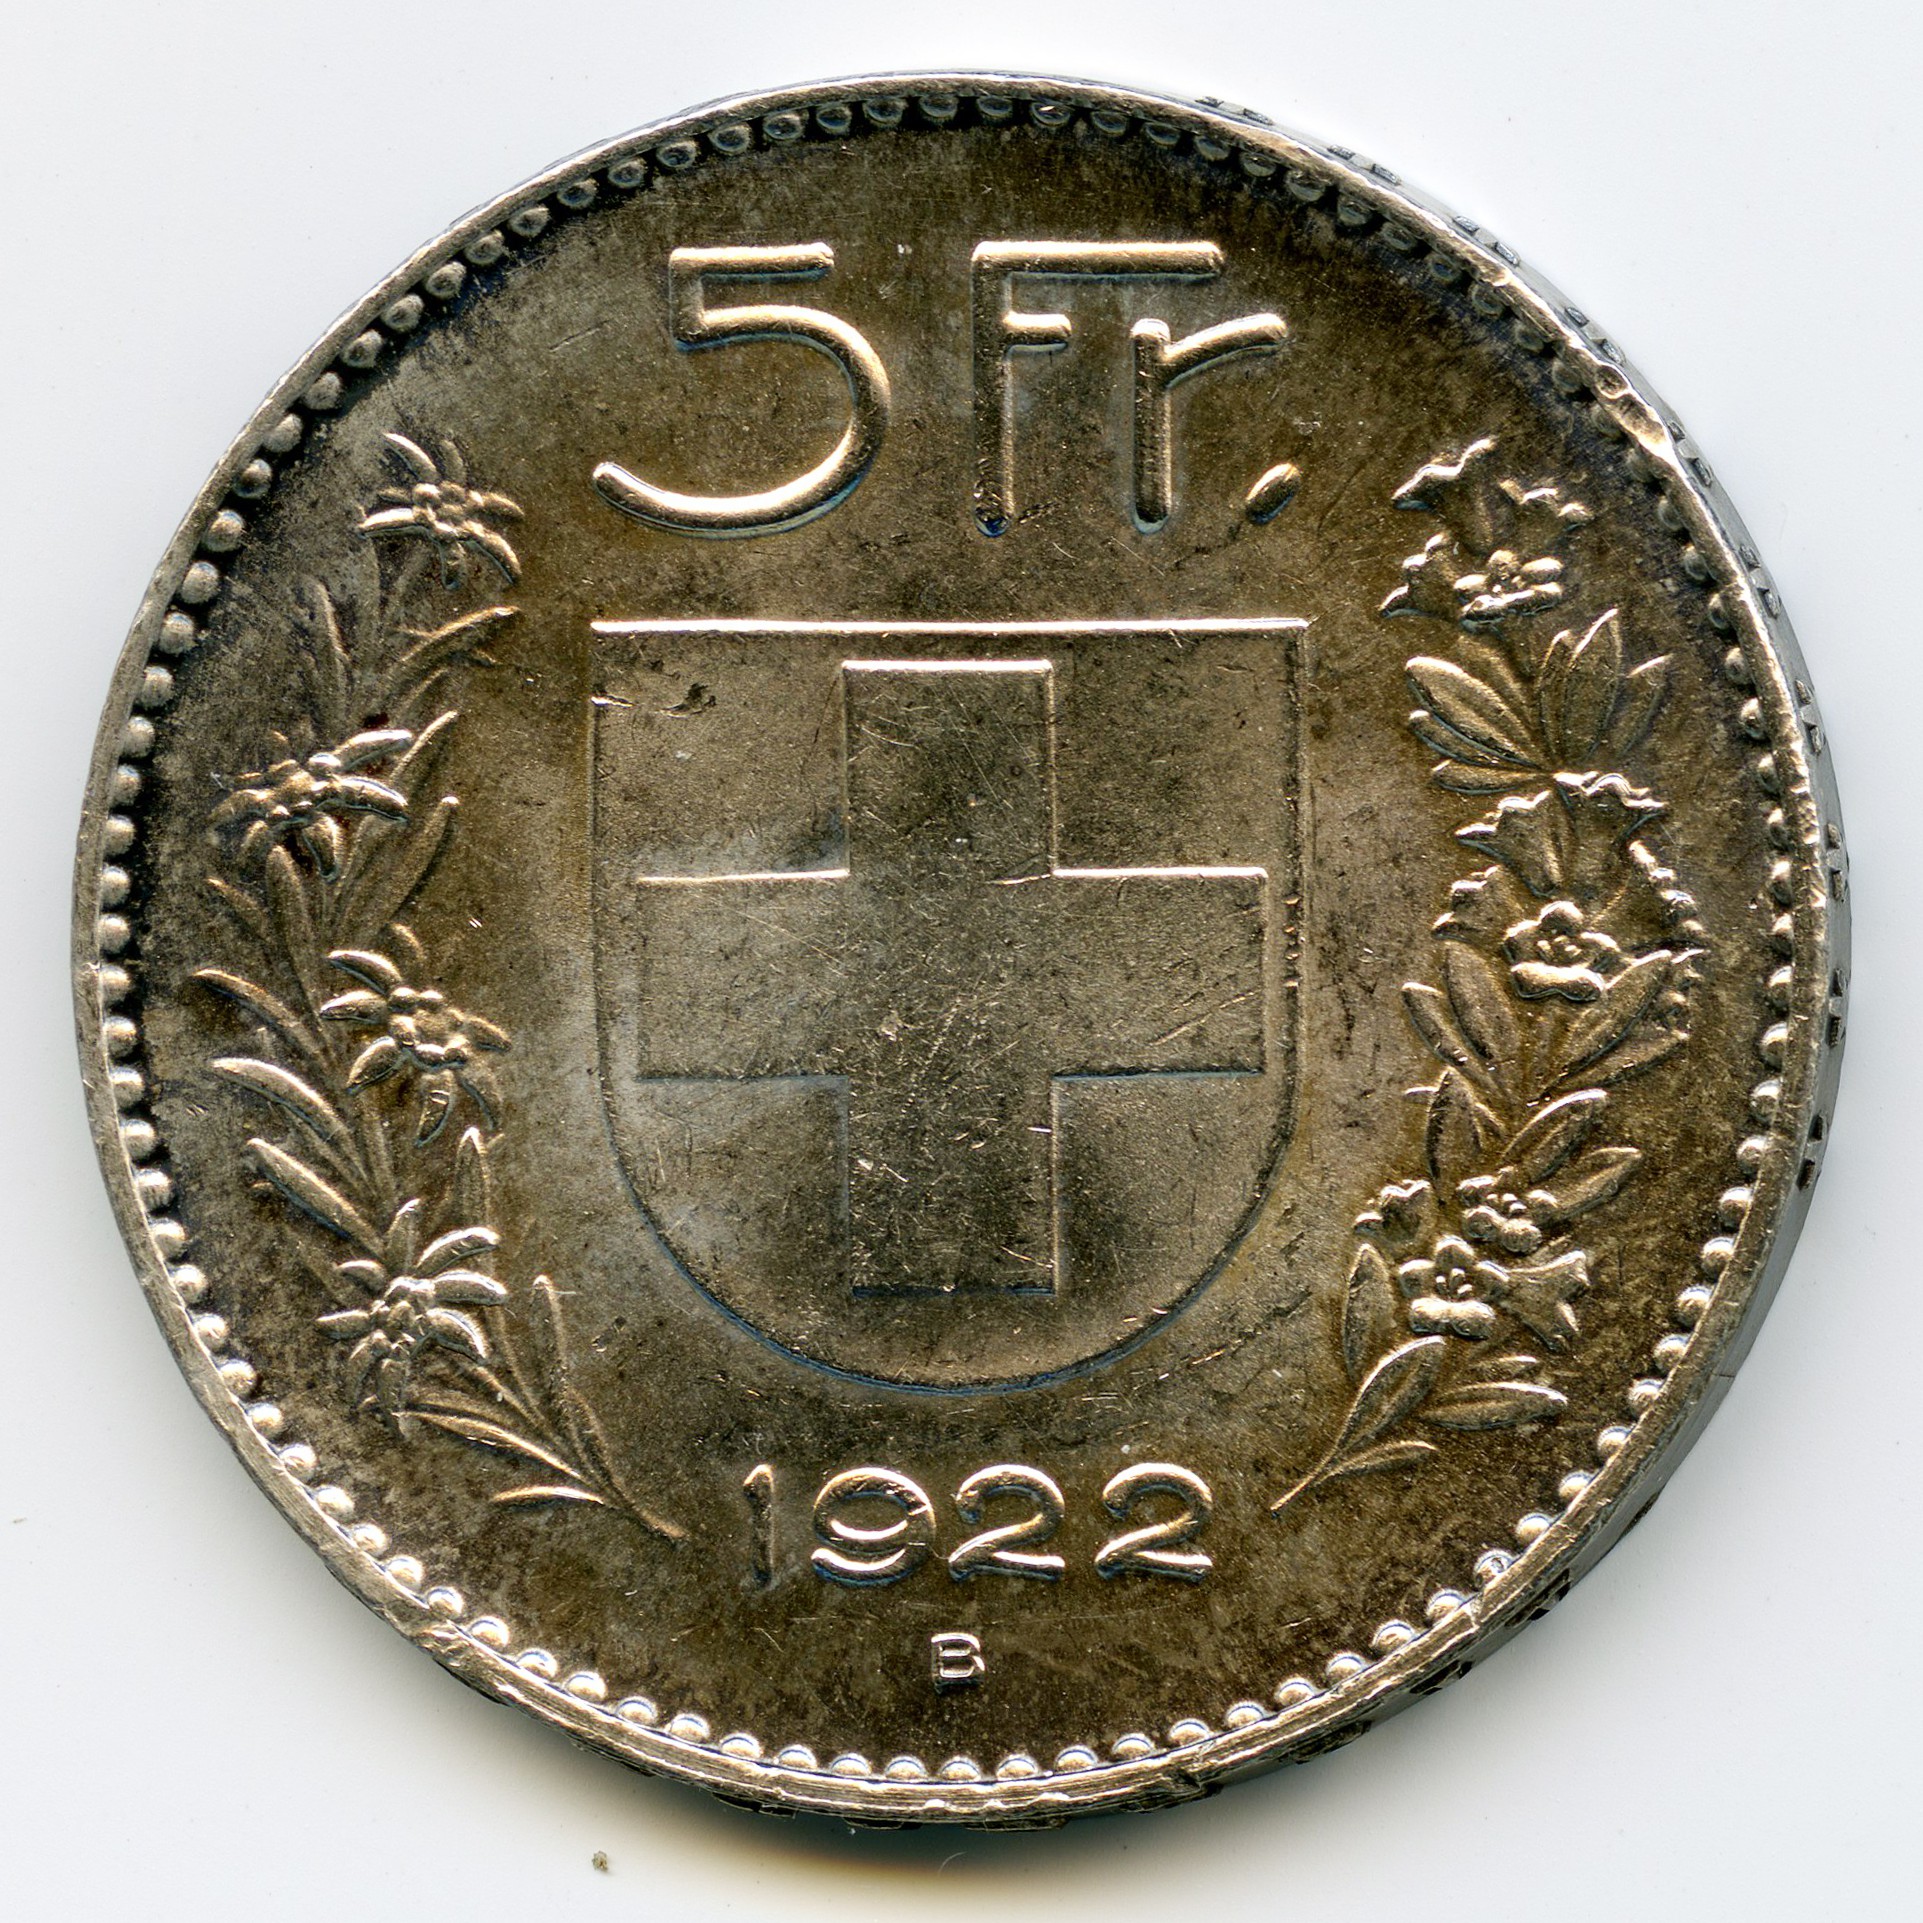 Suisse - 5 Francs - 1922 B revers